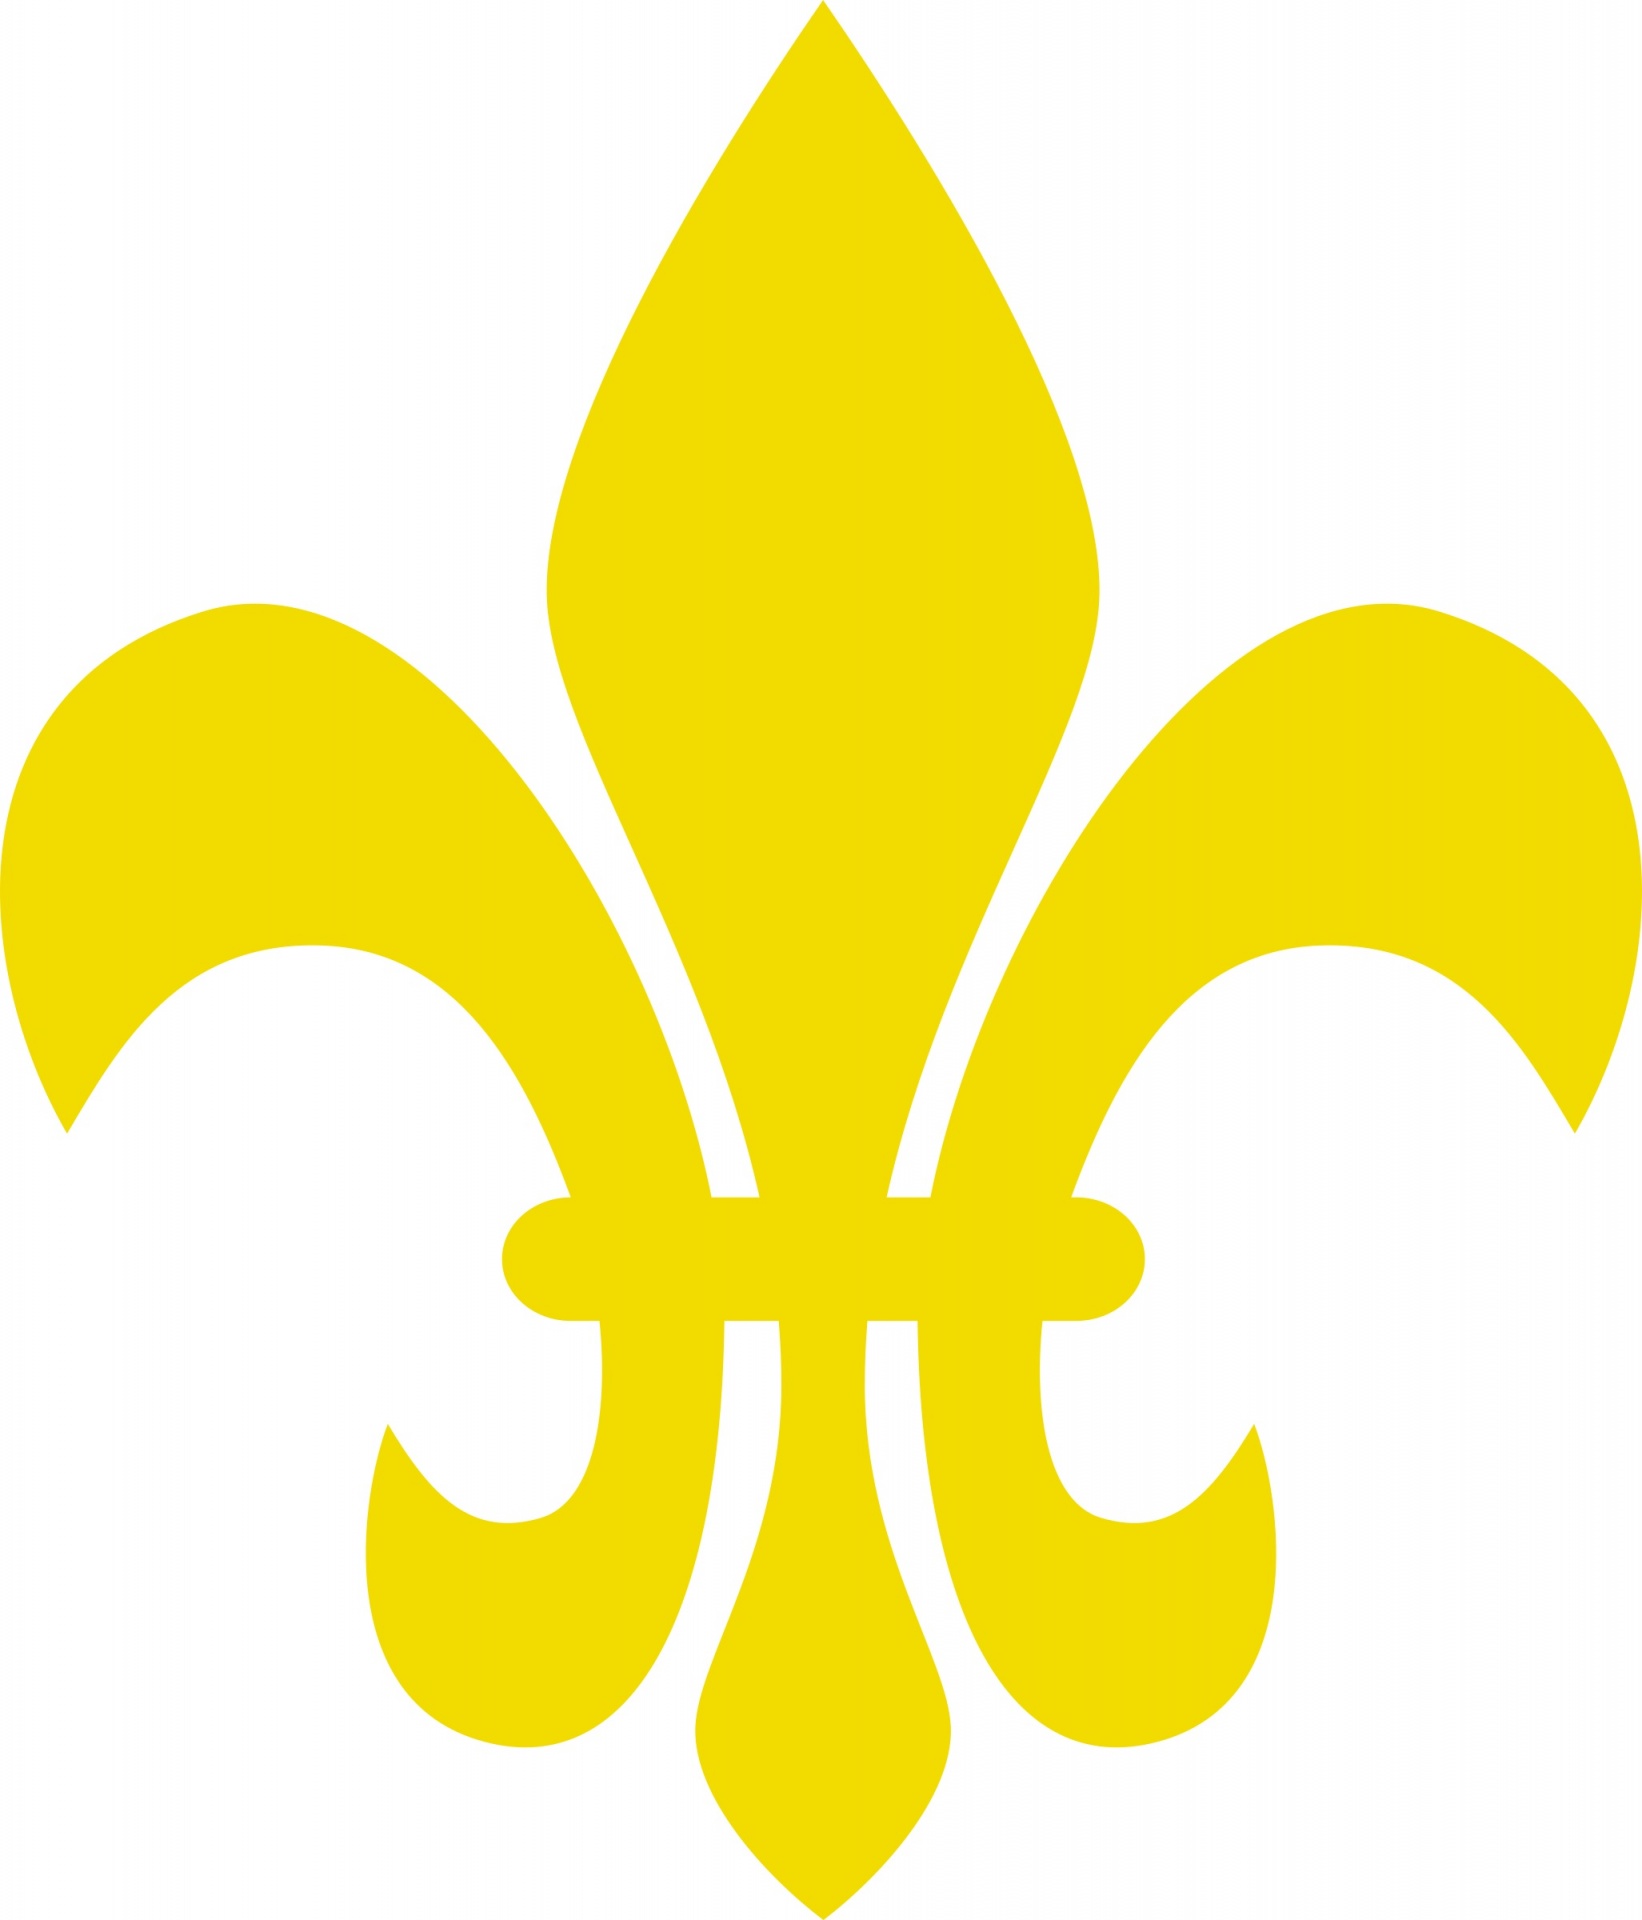 Download Fleur De Lis, Fleur De Lys, French. Royalty-Free Vector Graphic -  Pixabay